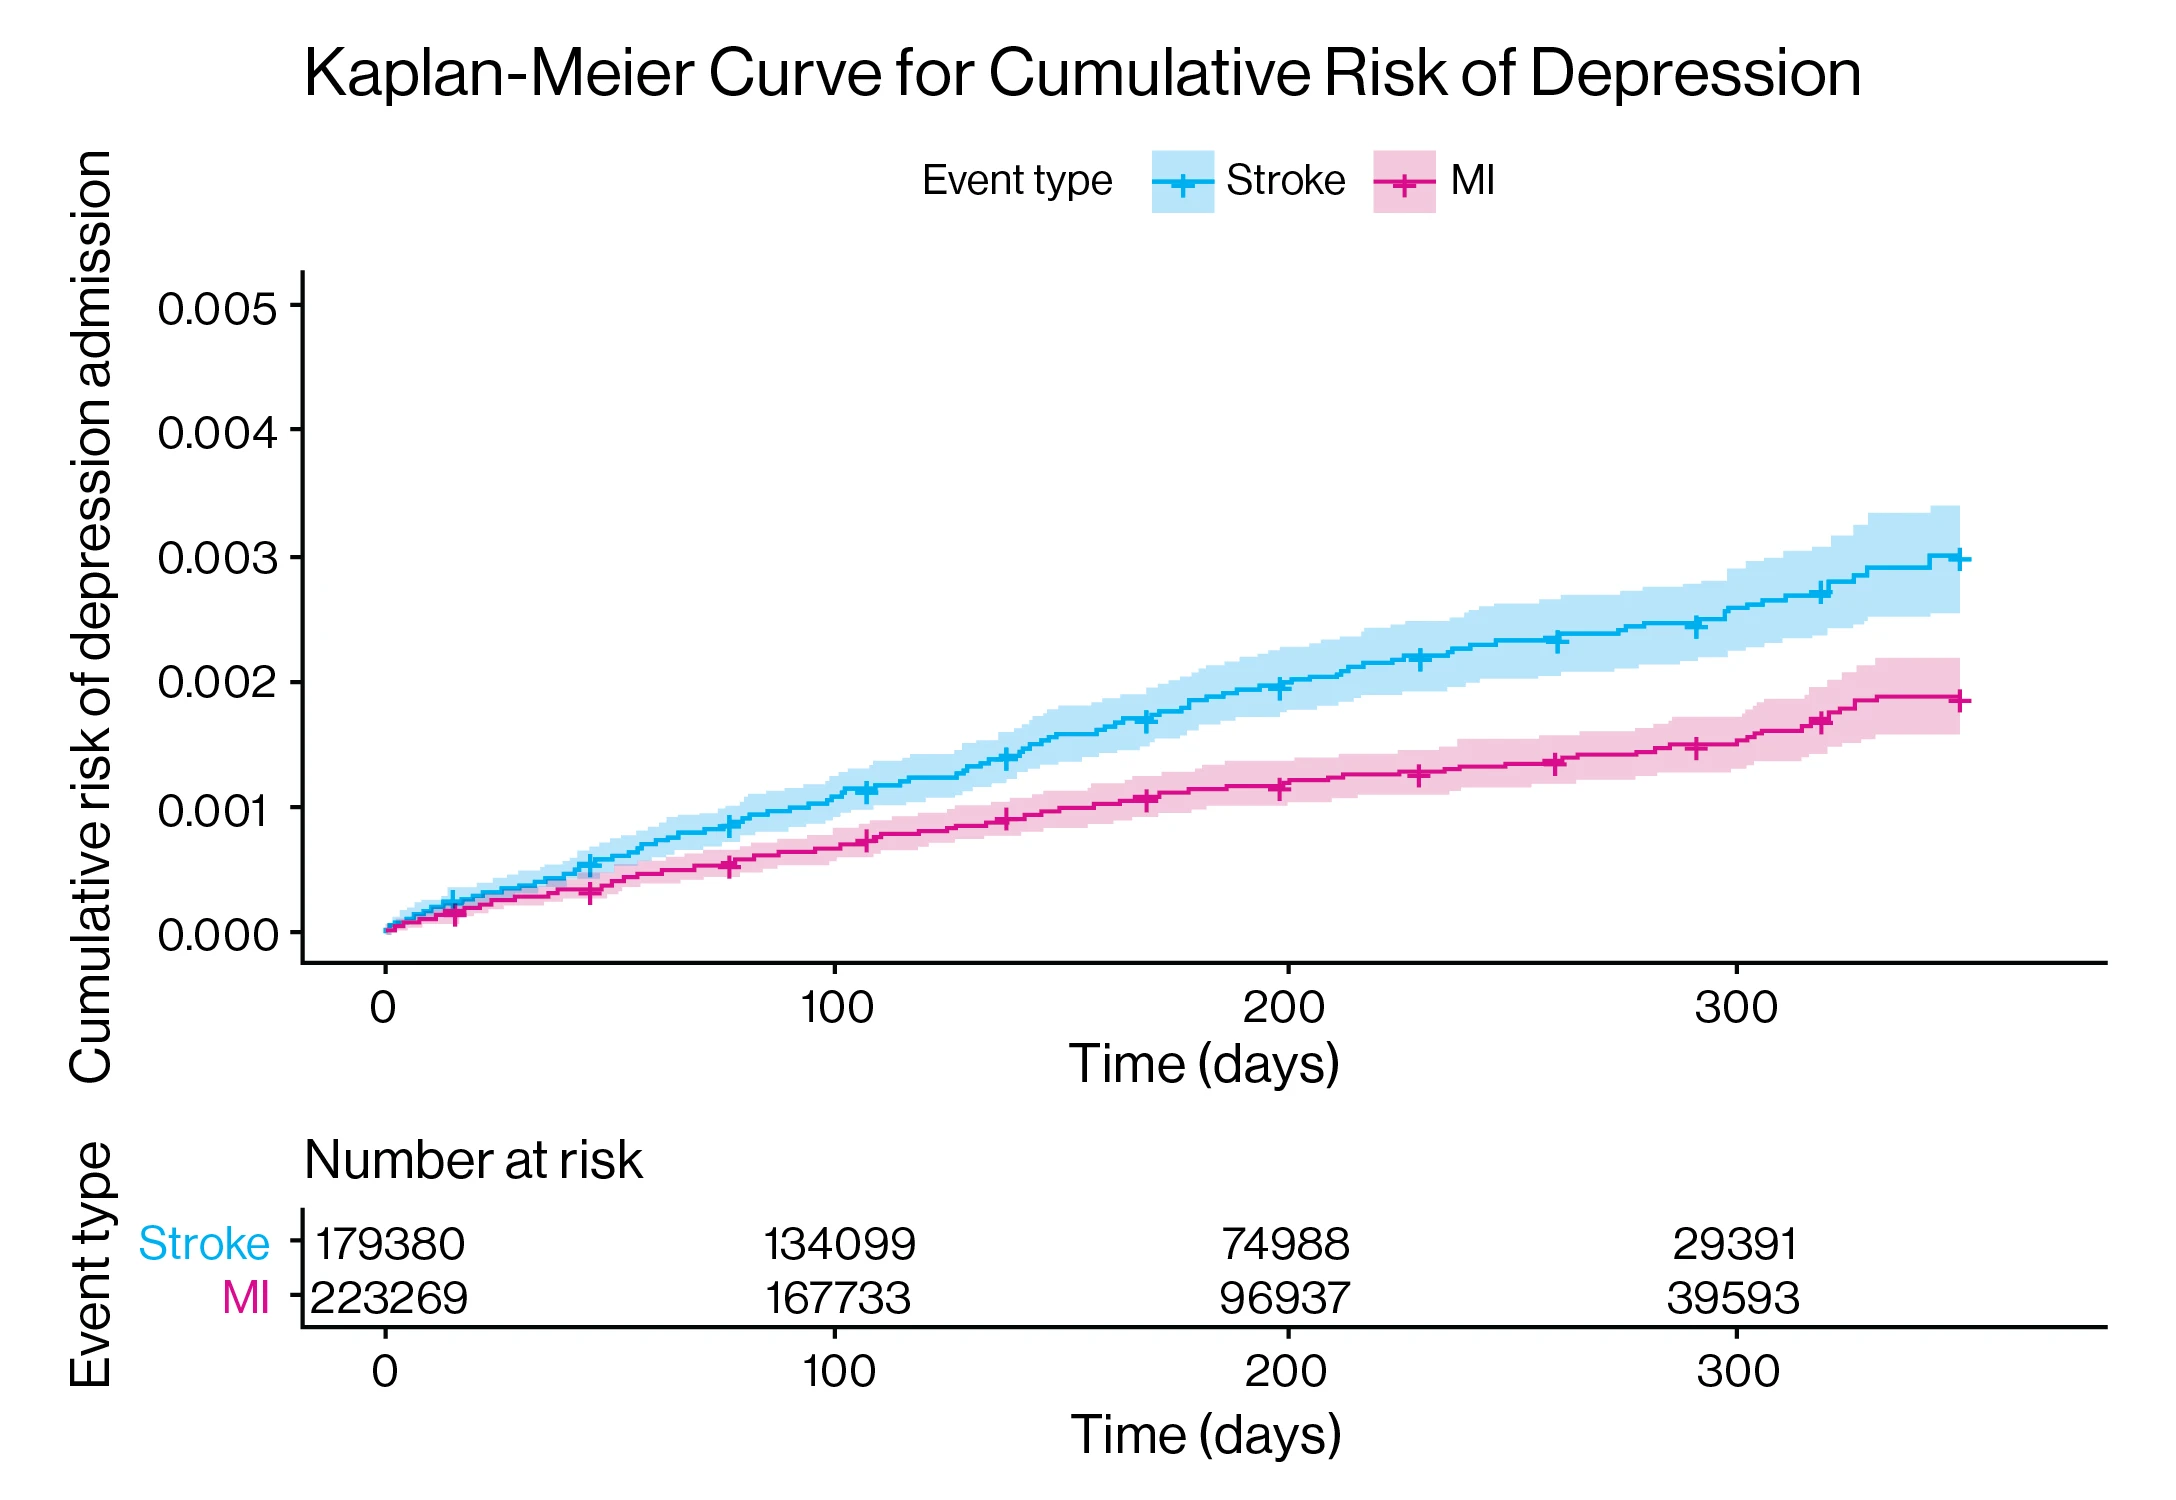 Kaplan-Meier cumulative risk of depression. 







